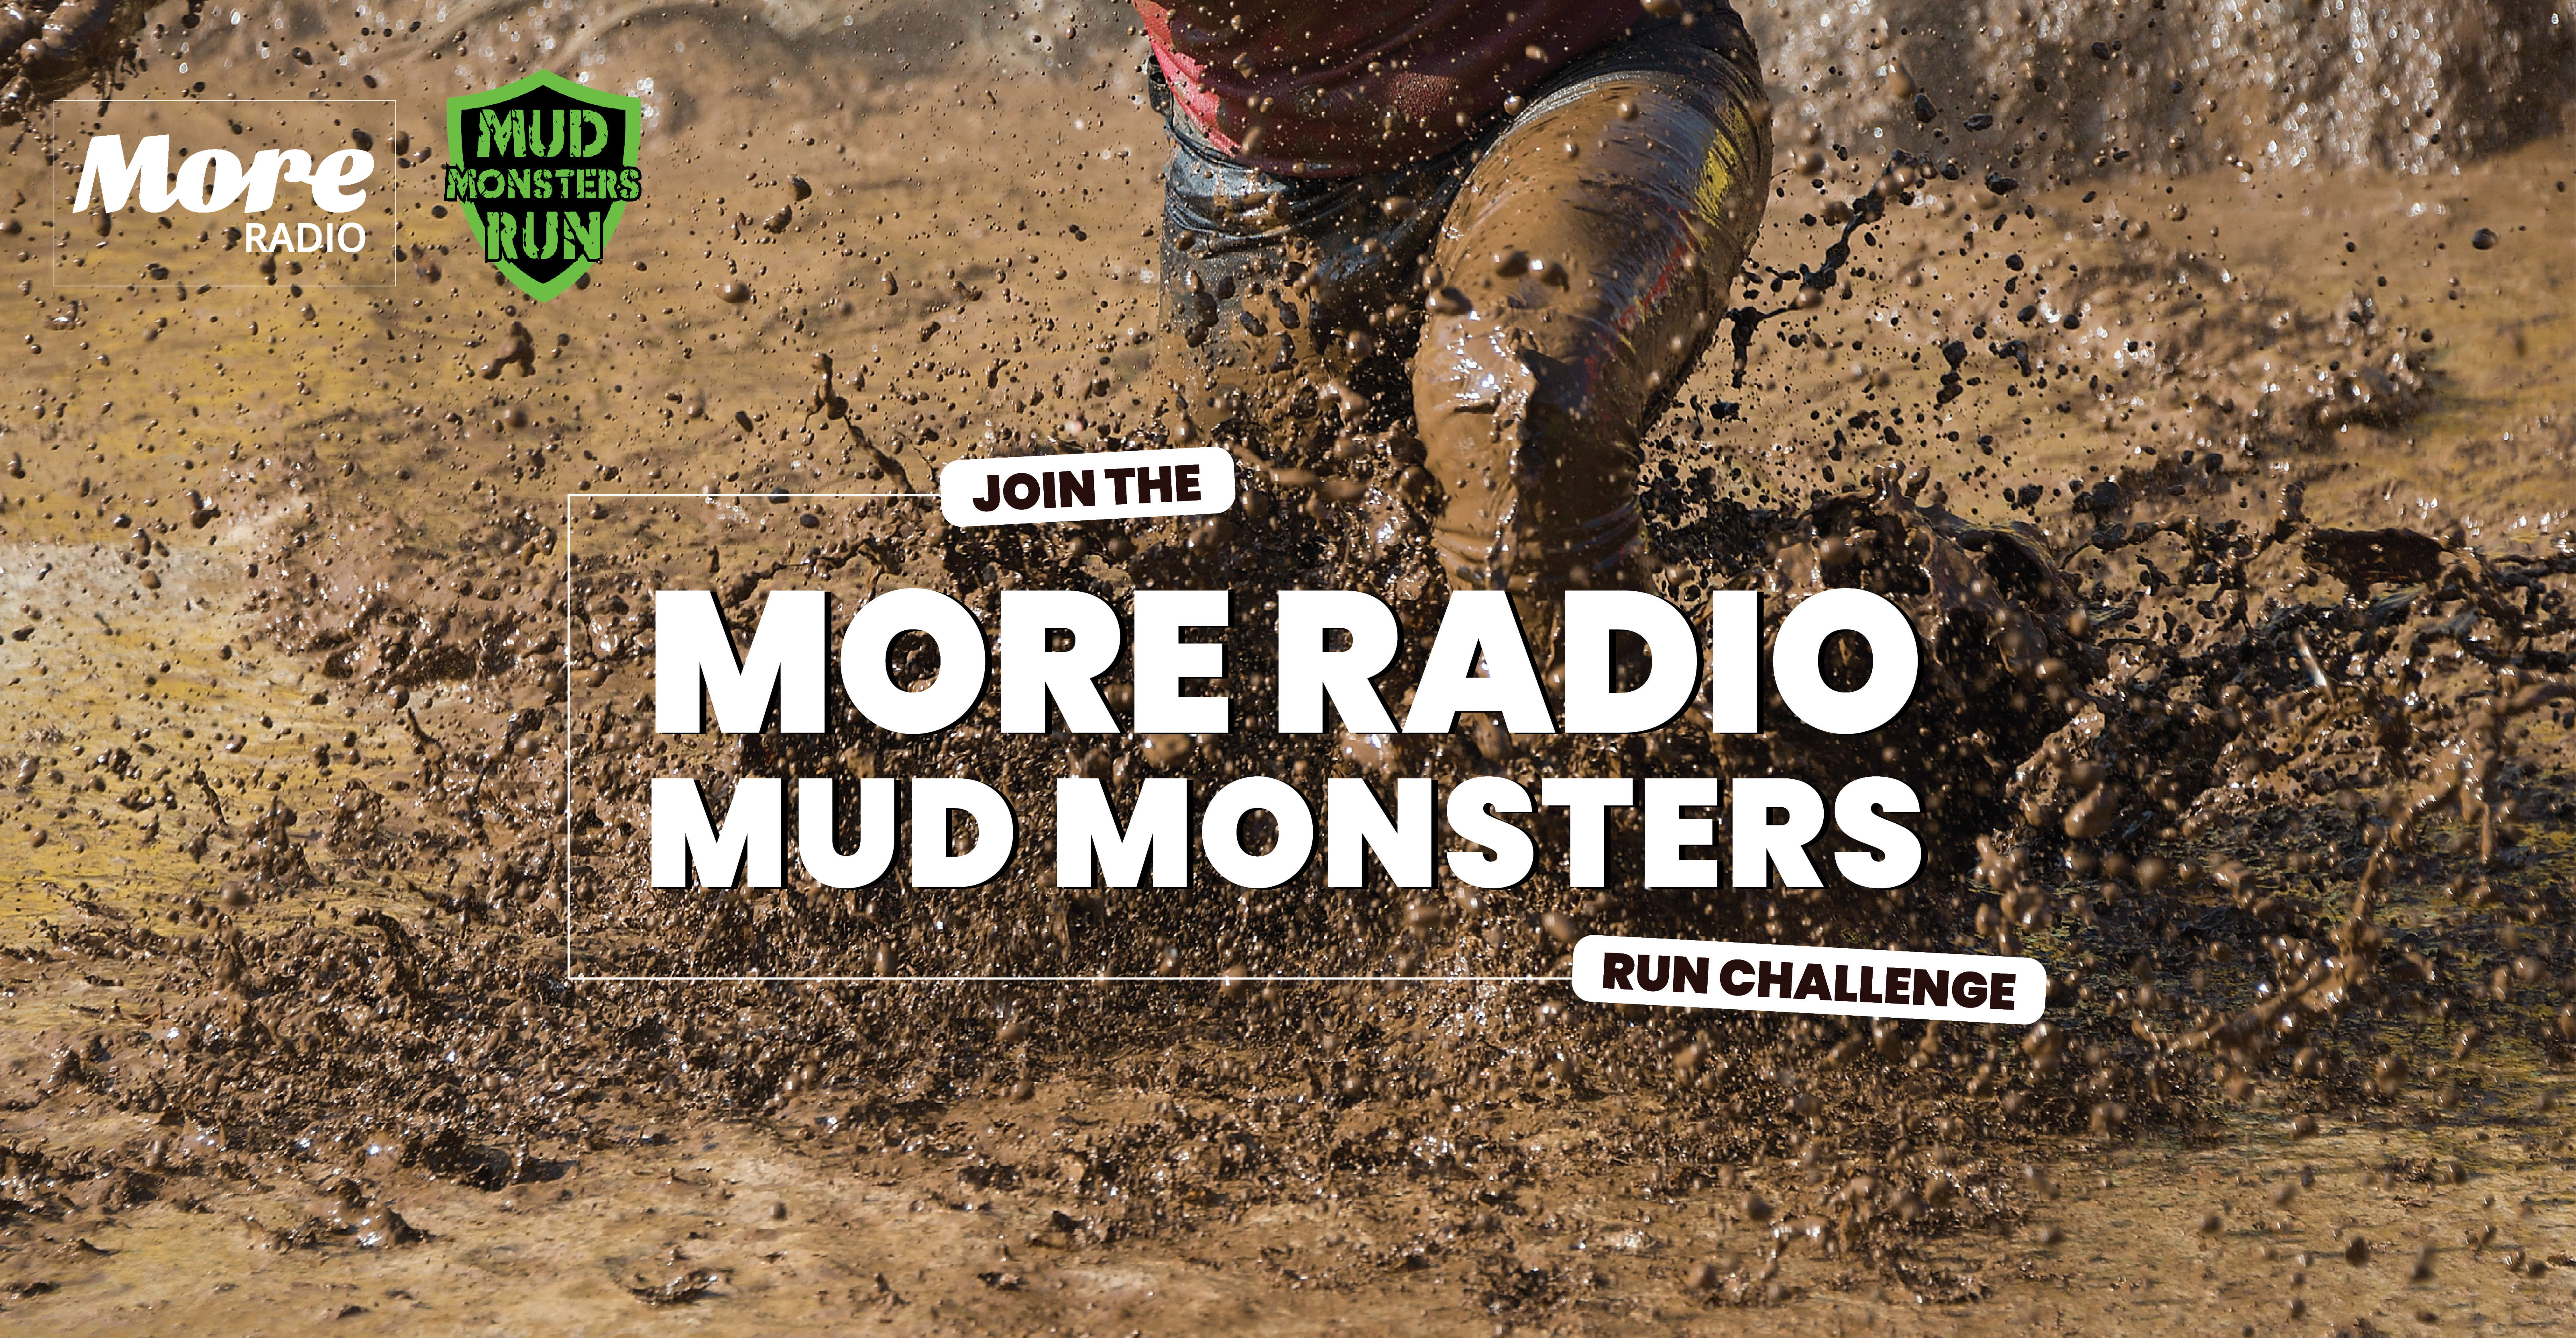 Mud Monsters